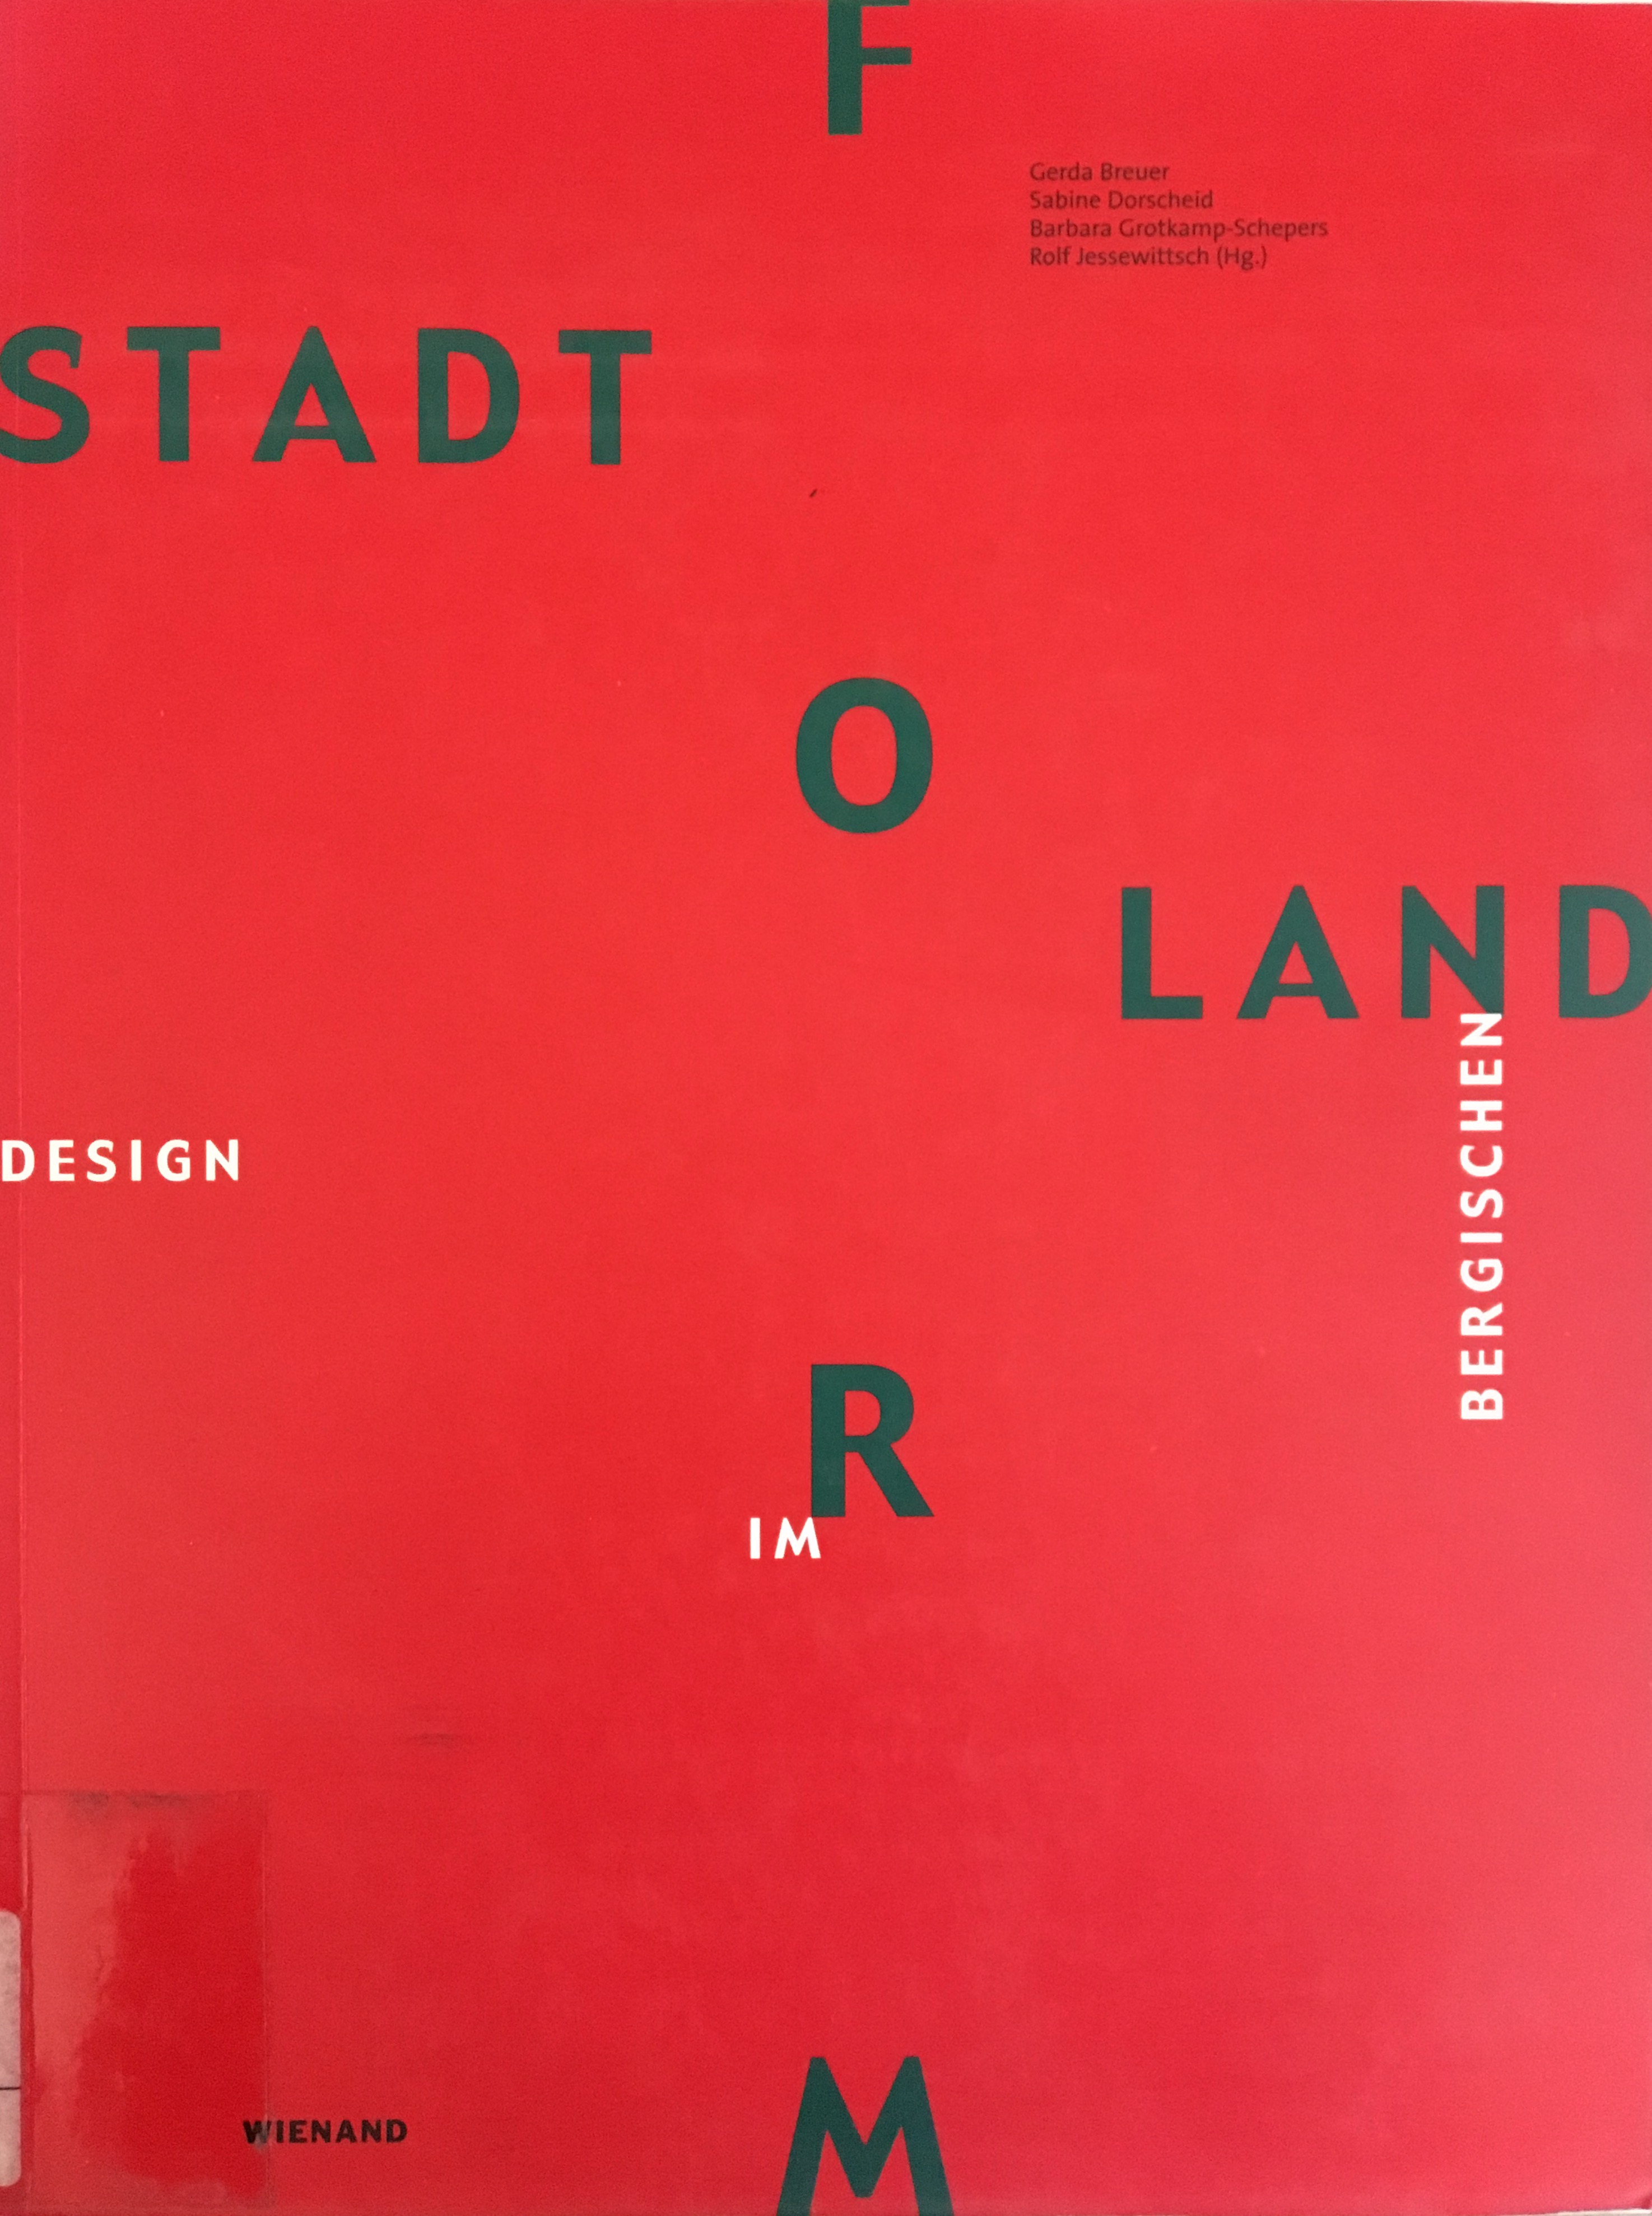 Stadt Land Form, Bild: Hrsg. von Gerda Breuer. Köln: Wienand, 2000..